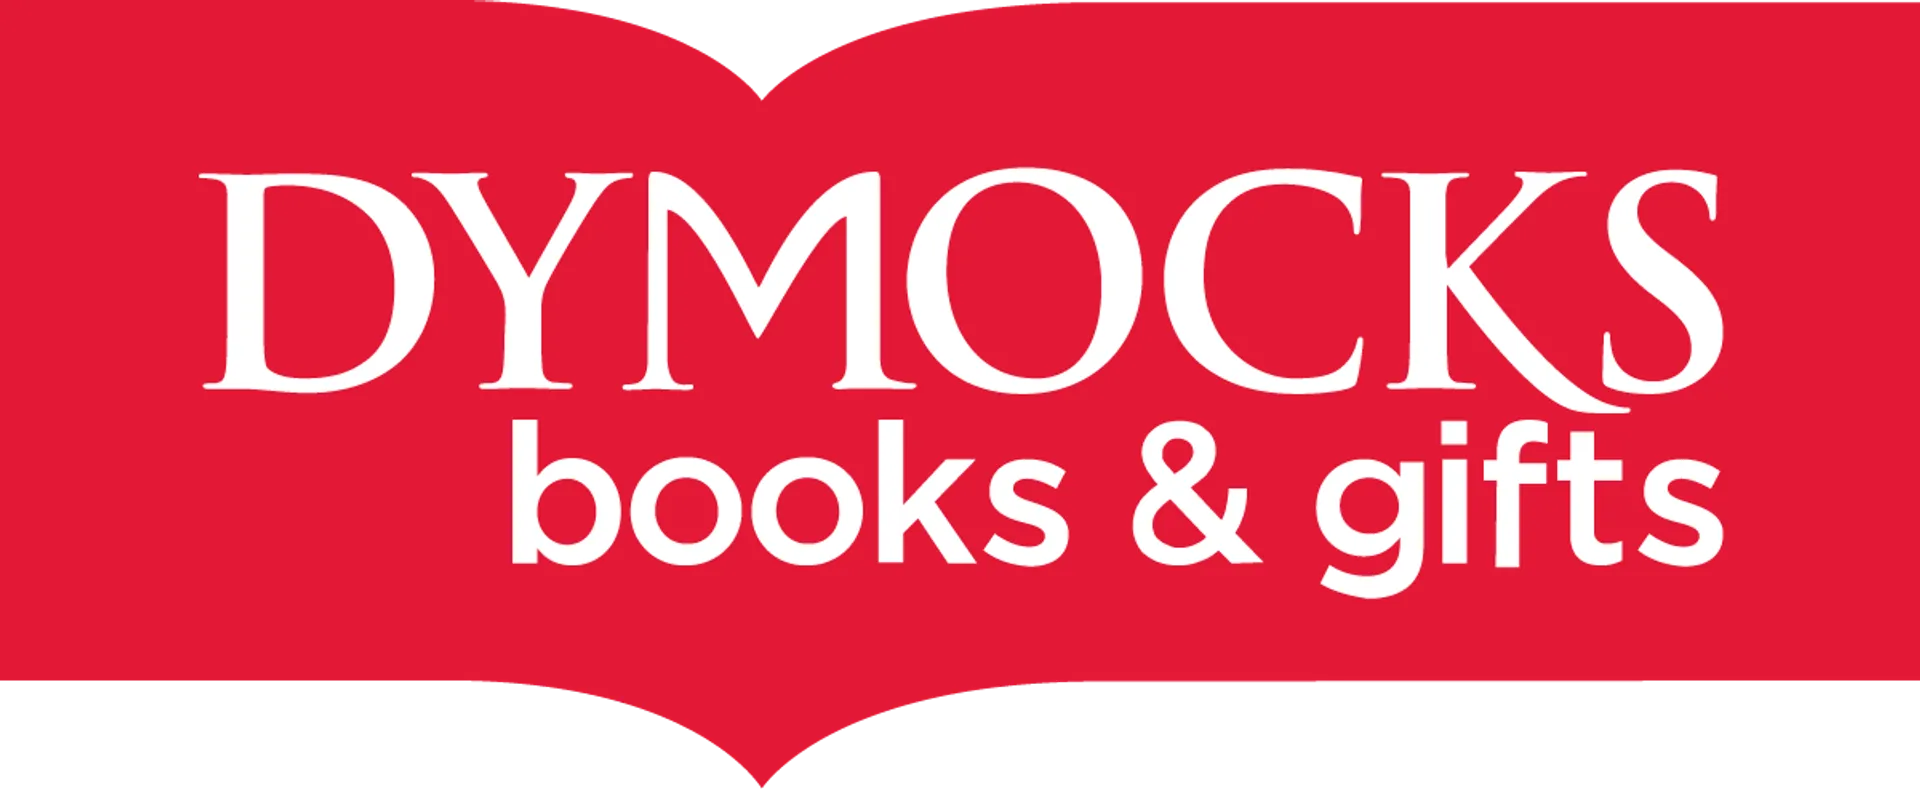 DYMOCKS logo